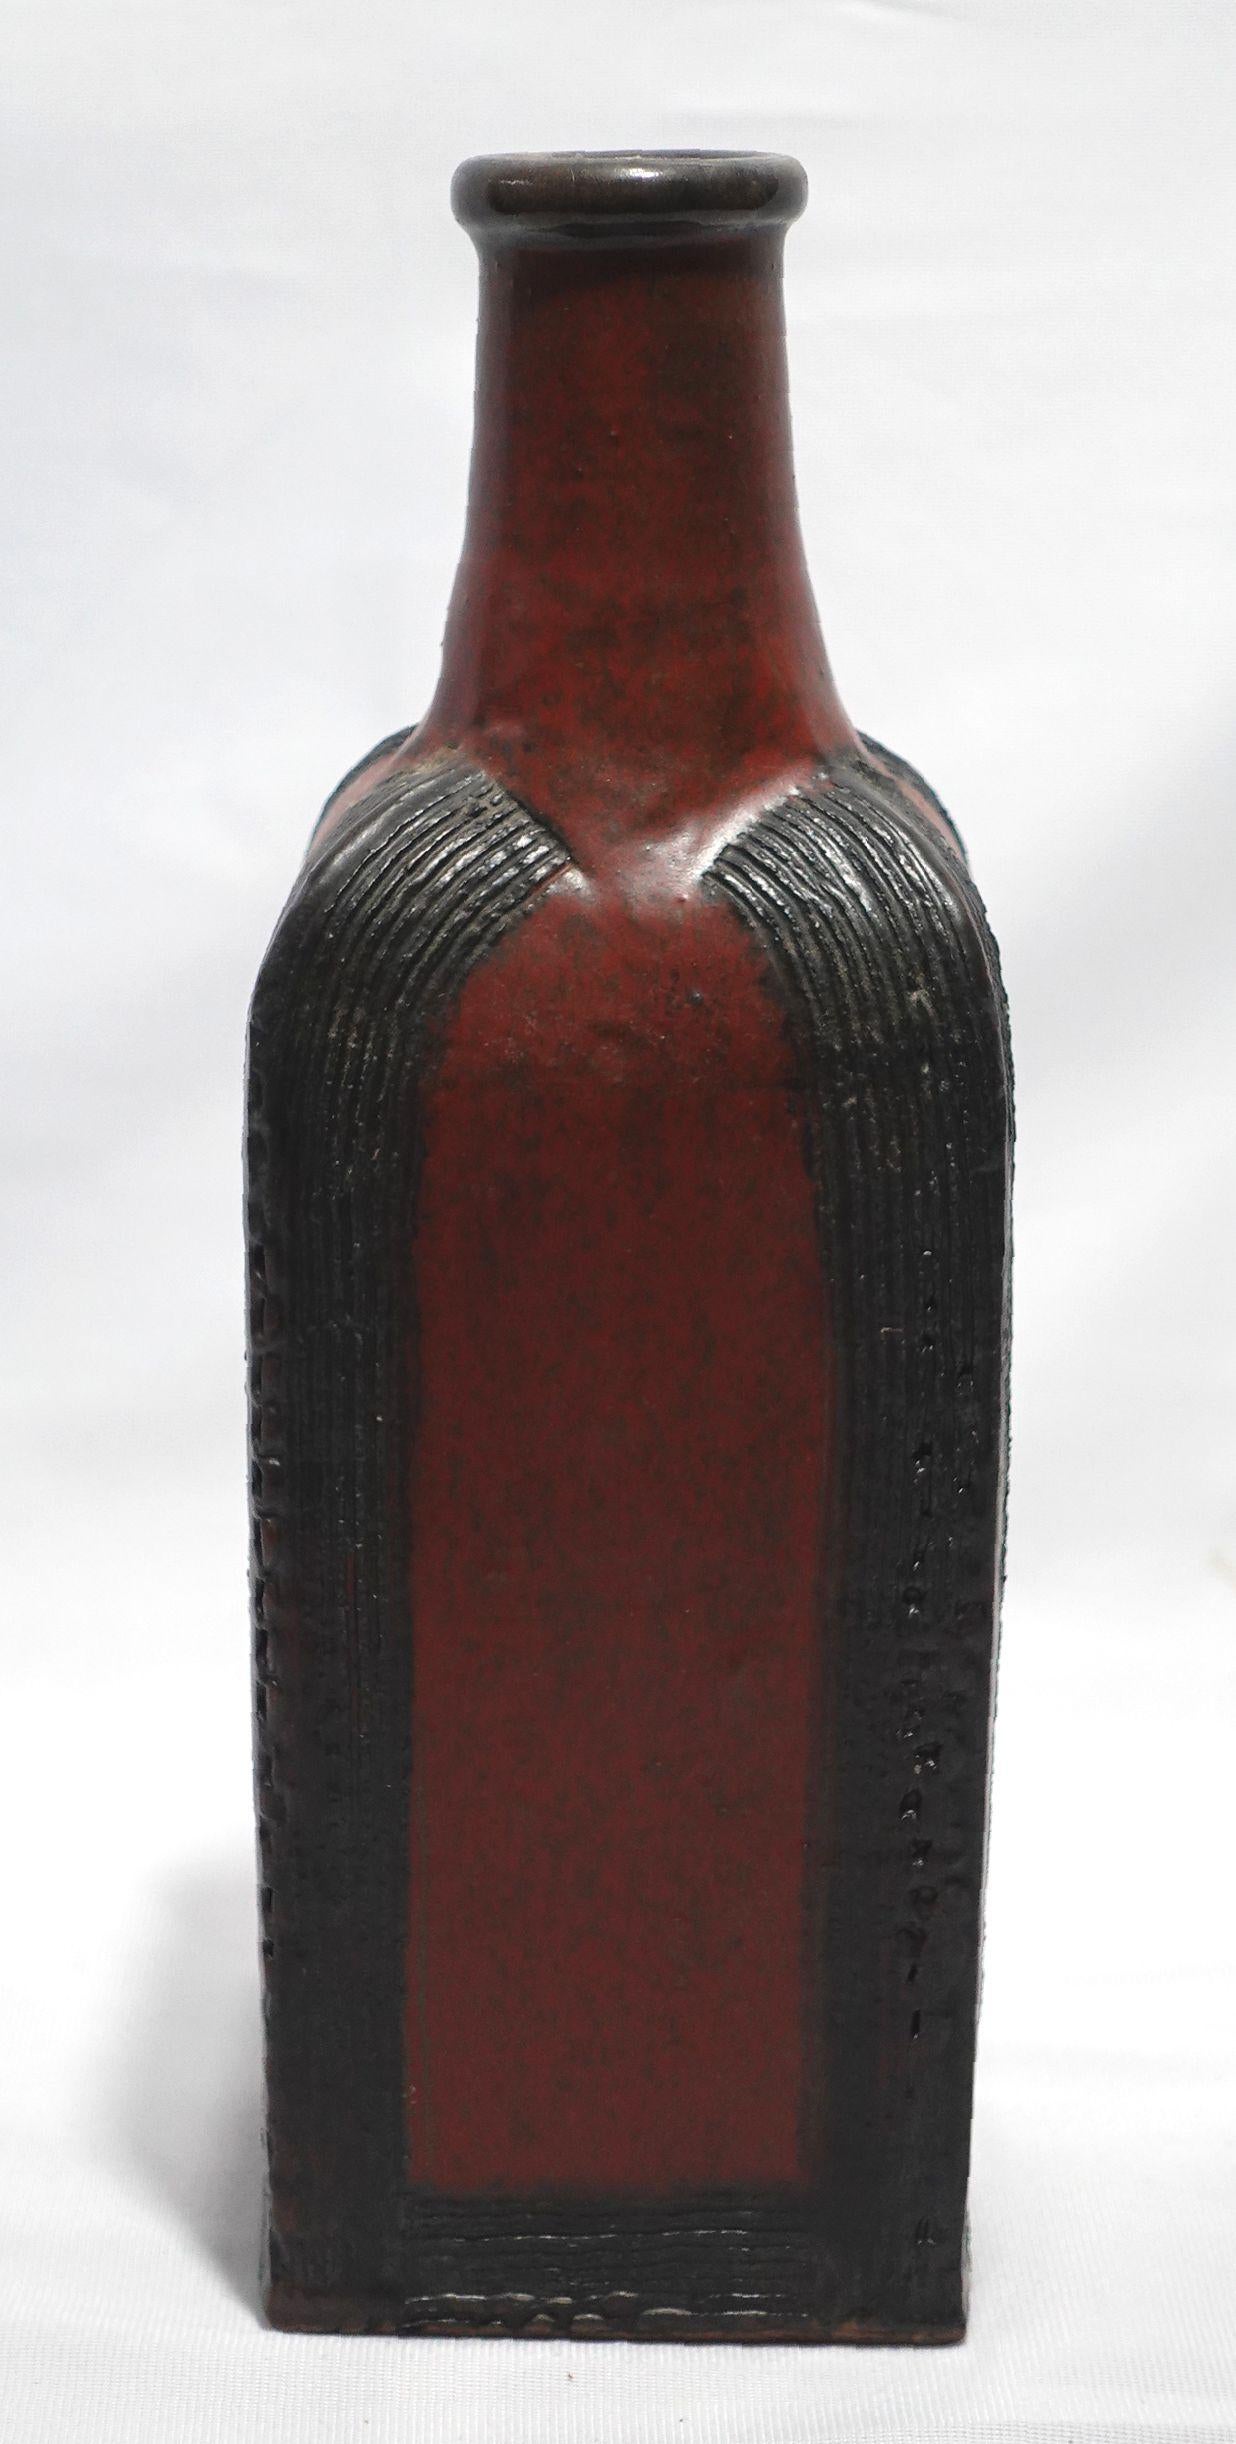 The black and orange squared bottle-shaped vase stands 11.25